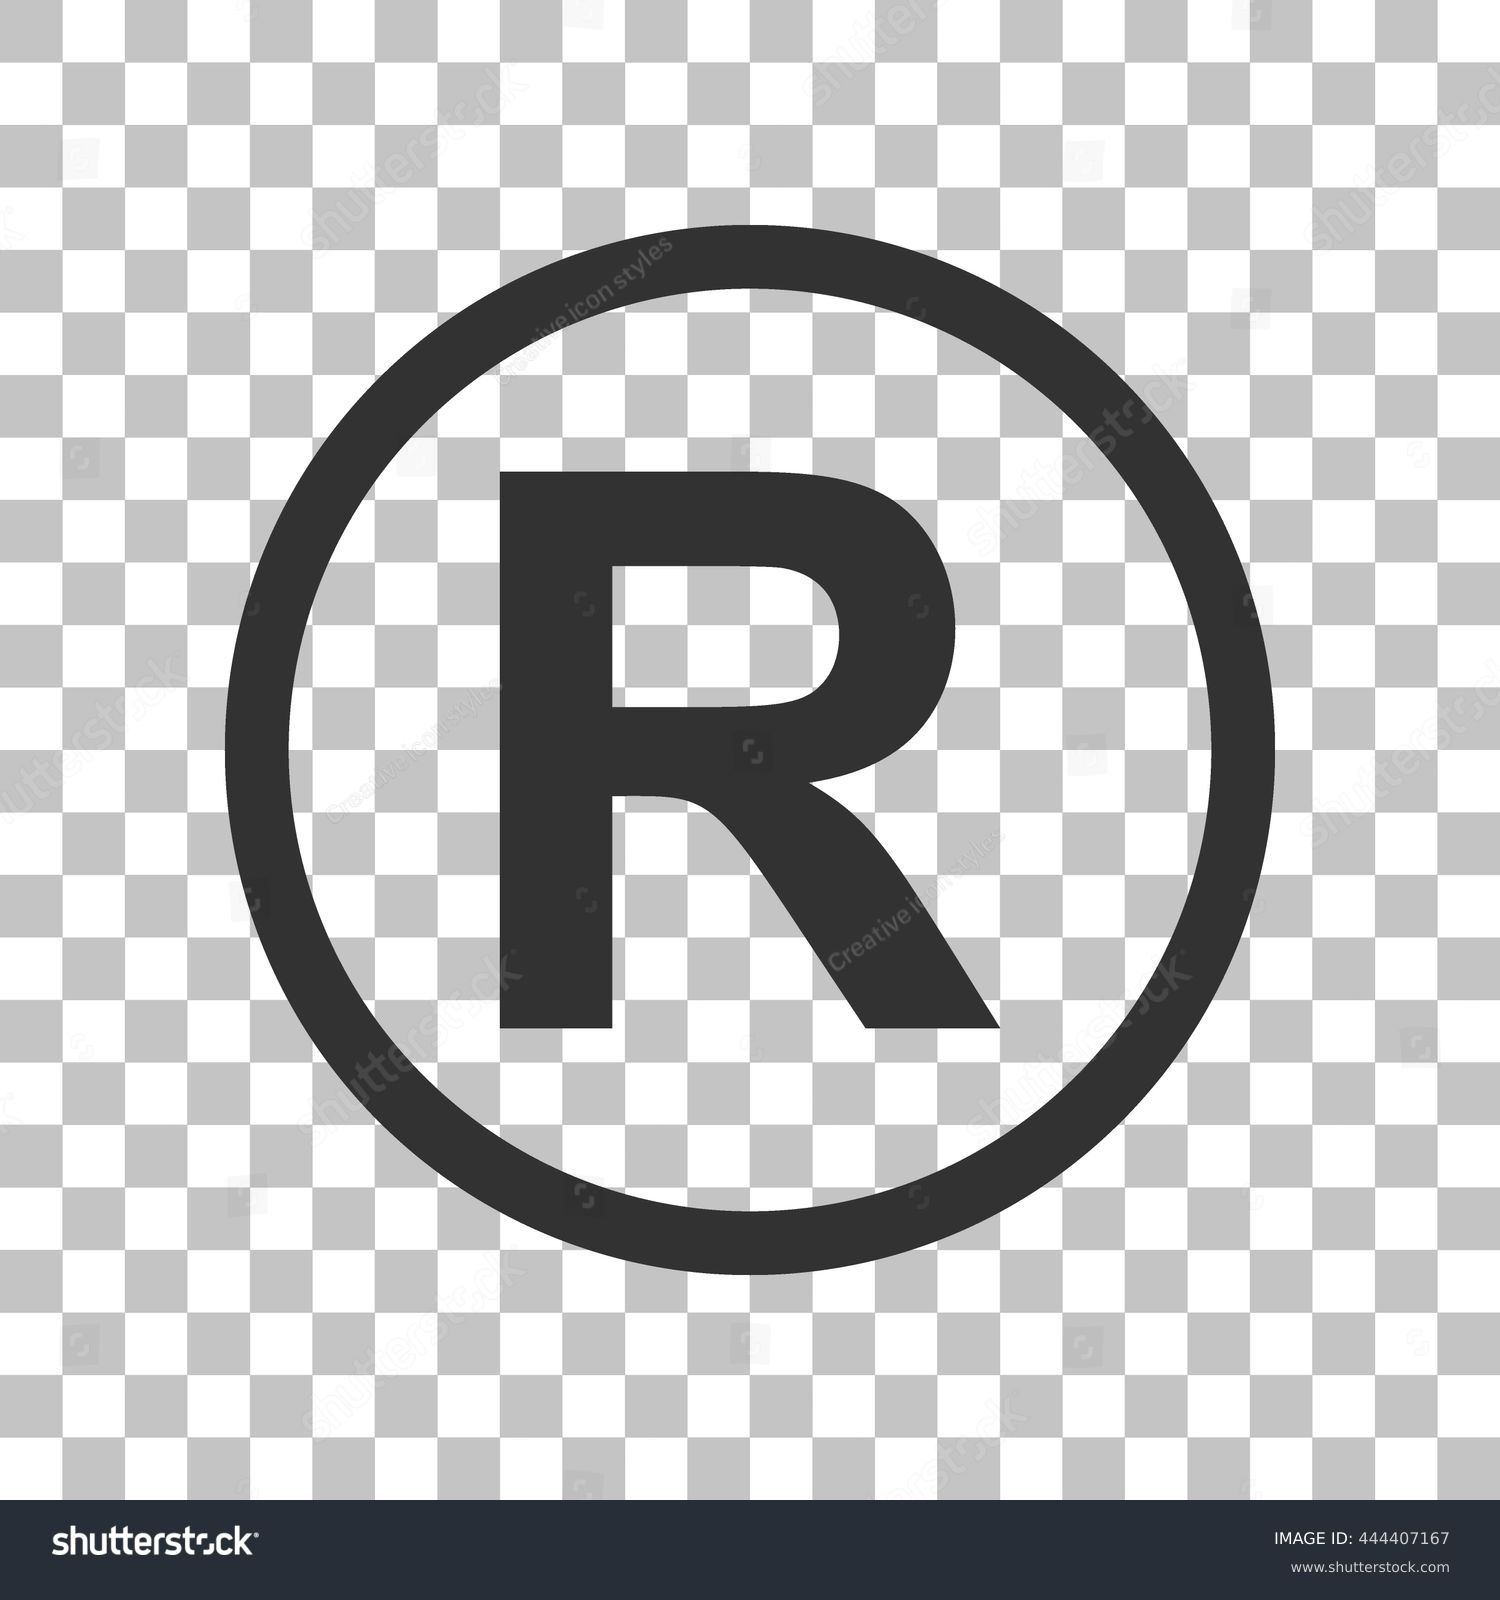 С в кружочке скопировать. Знак r в круге. Значок торговой марки. Торговая марка r. Буква r в кружочке.